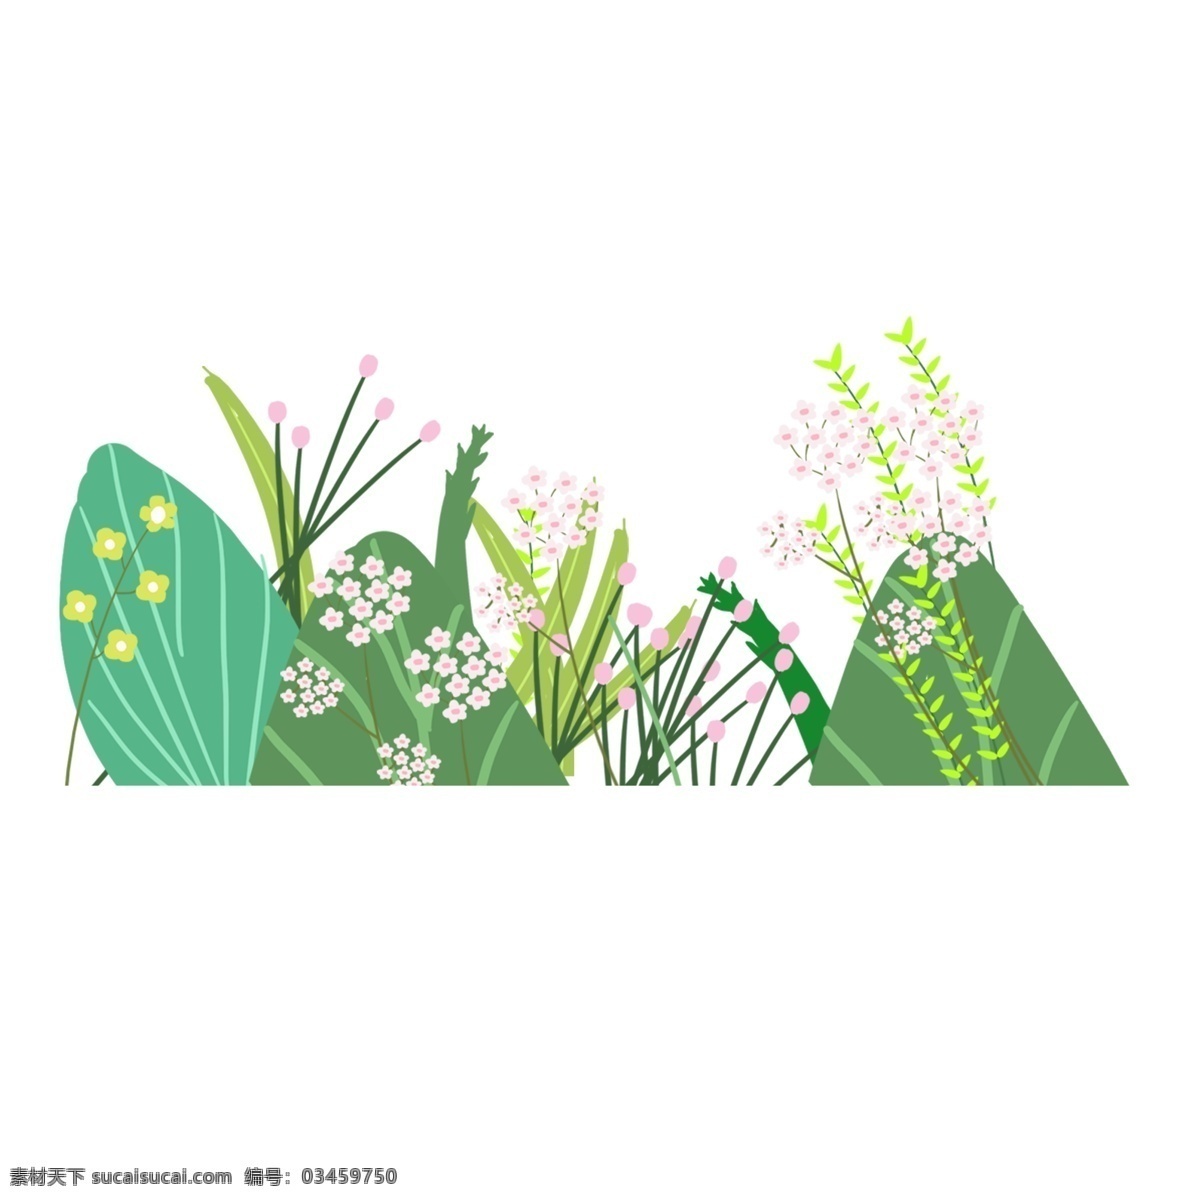 水彩 植物 装饰 免 抠 图 插画 免扣素材 透明素材 卡通素材 可爱 清新